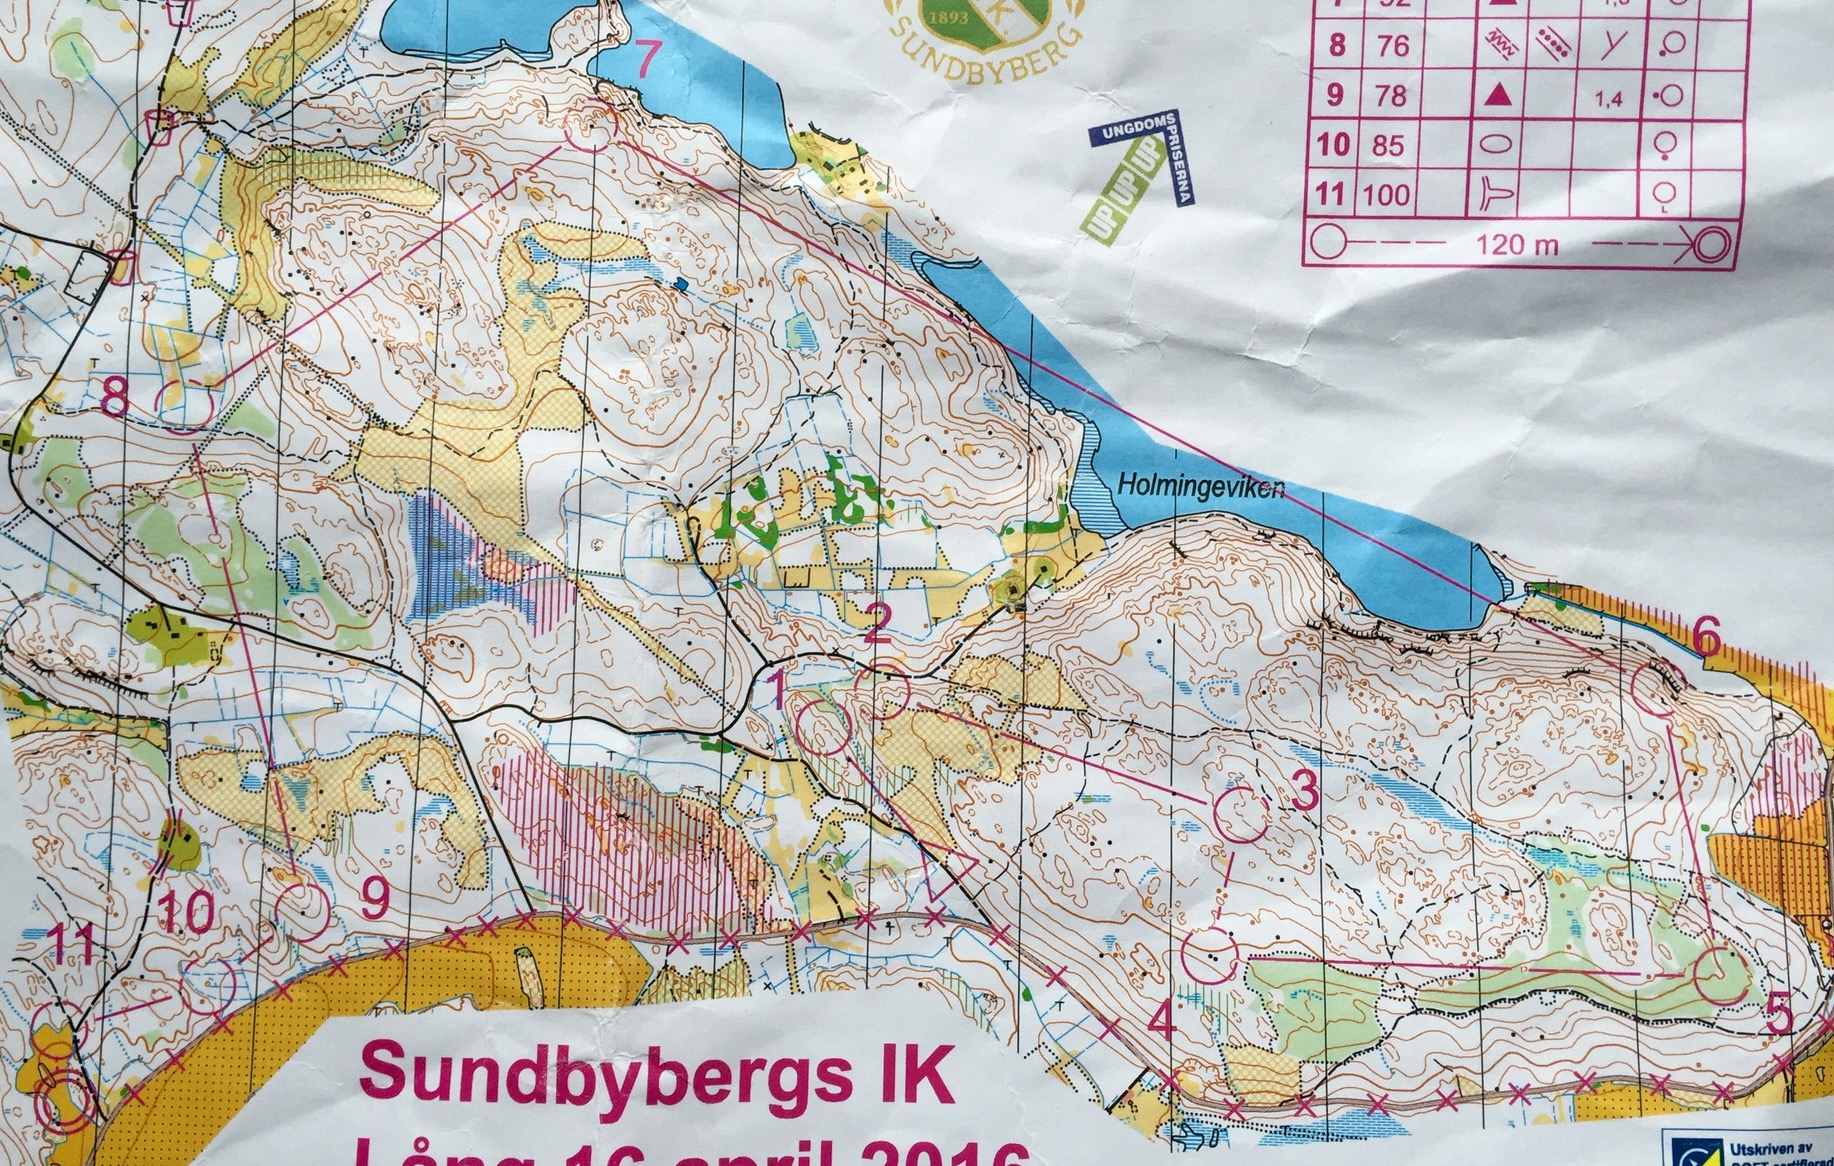 Sundbybergs IK, lång (16.04.2016)